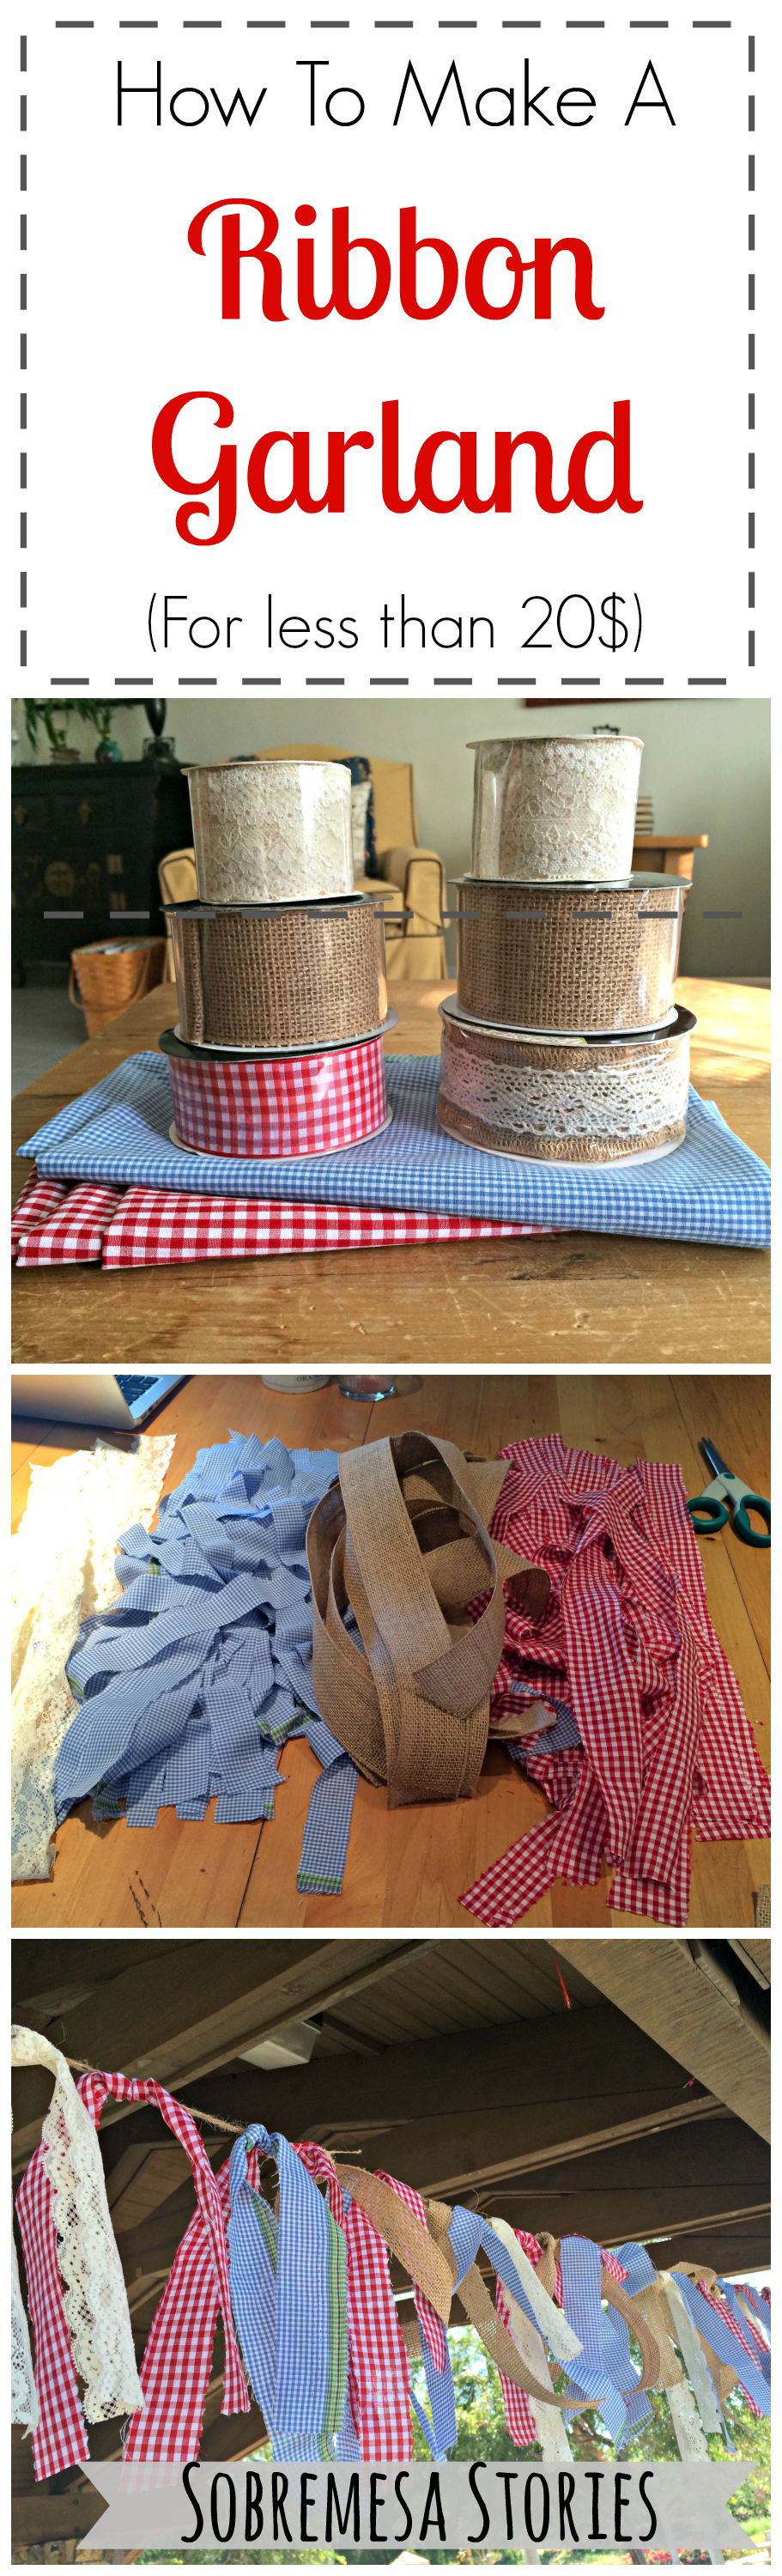 How To Make A Ribbon Garland Sobremesa Stories